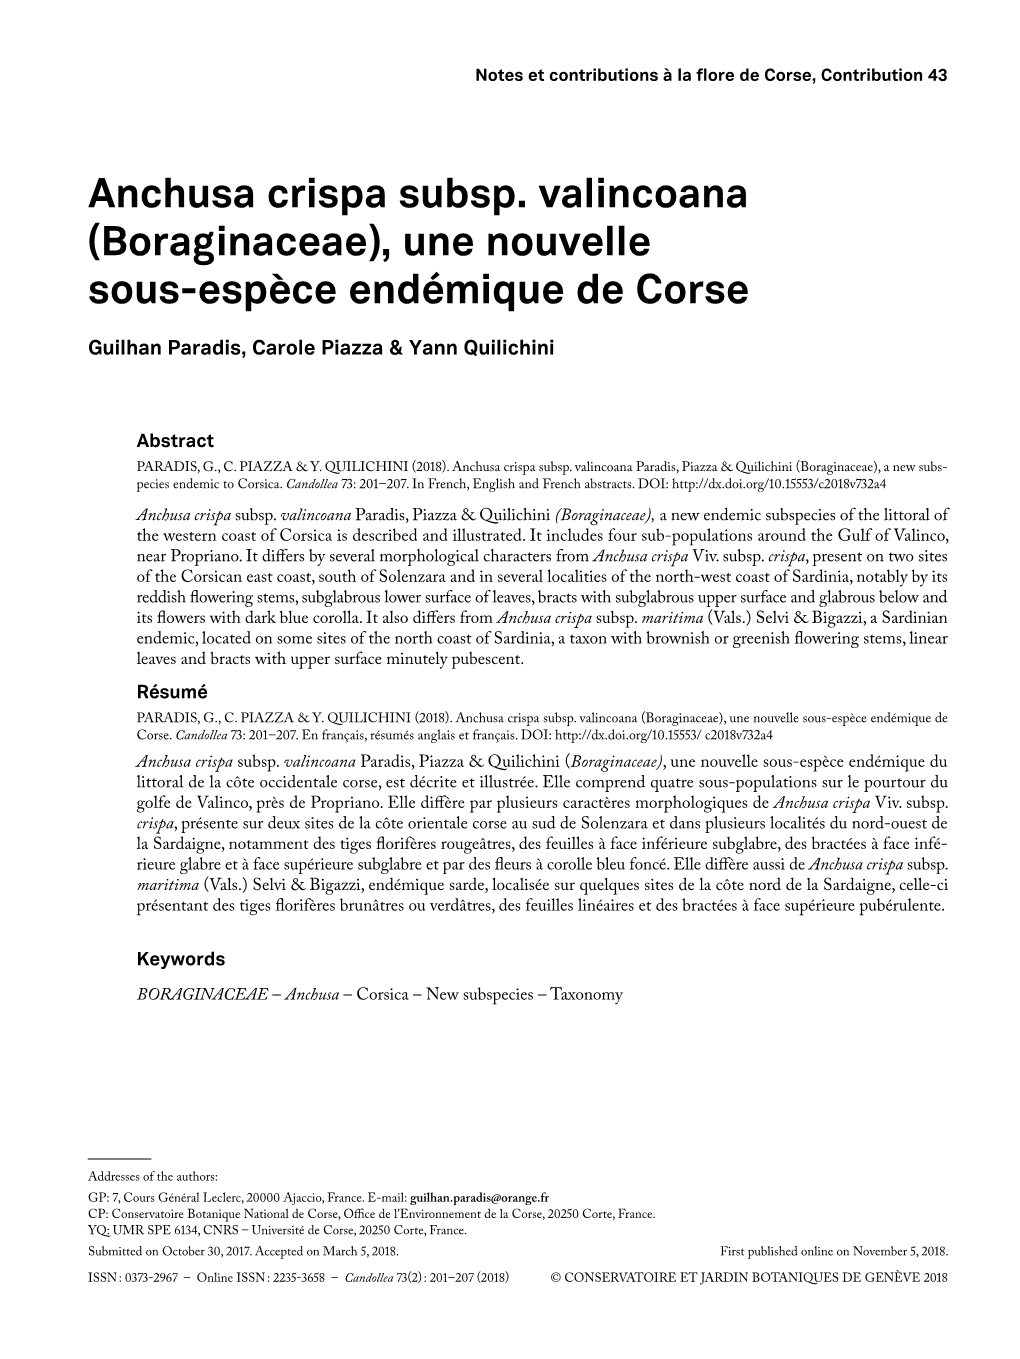 Anchusa Crispa Subsp. Valincoana (Boraginaceae), Une Nouvelle Sous-Espèce Endémique De Corse